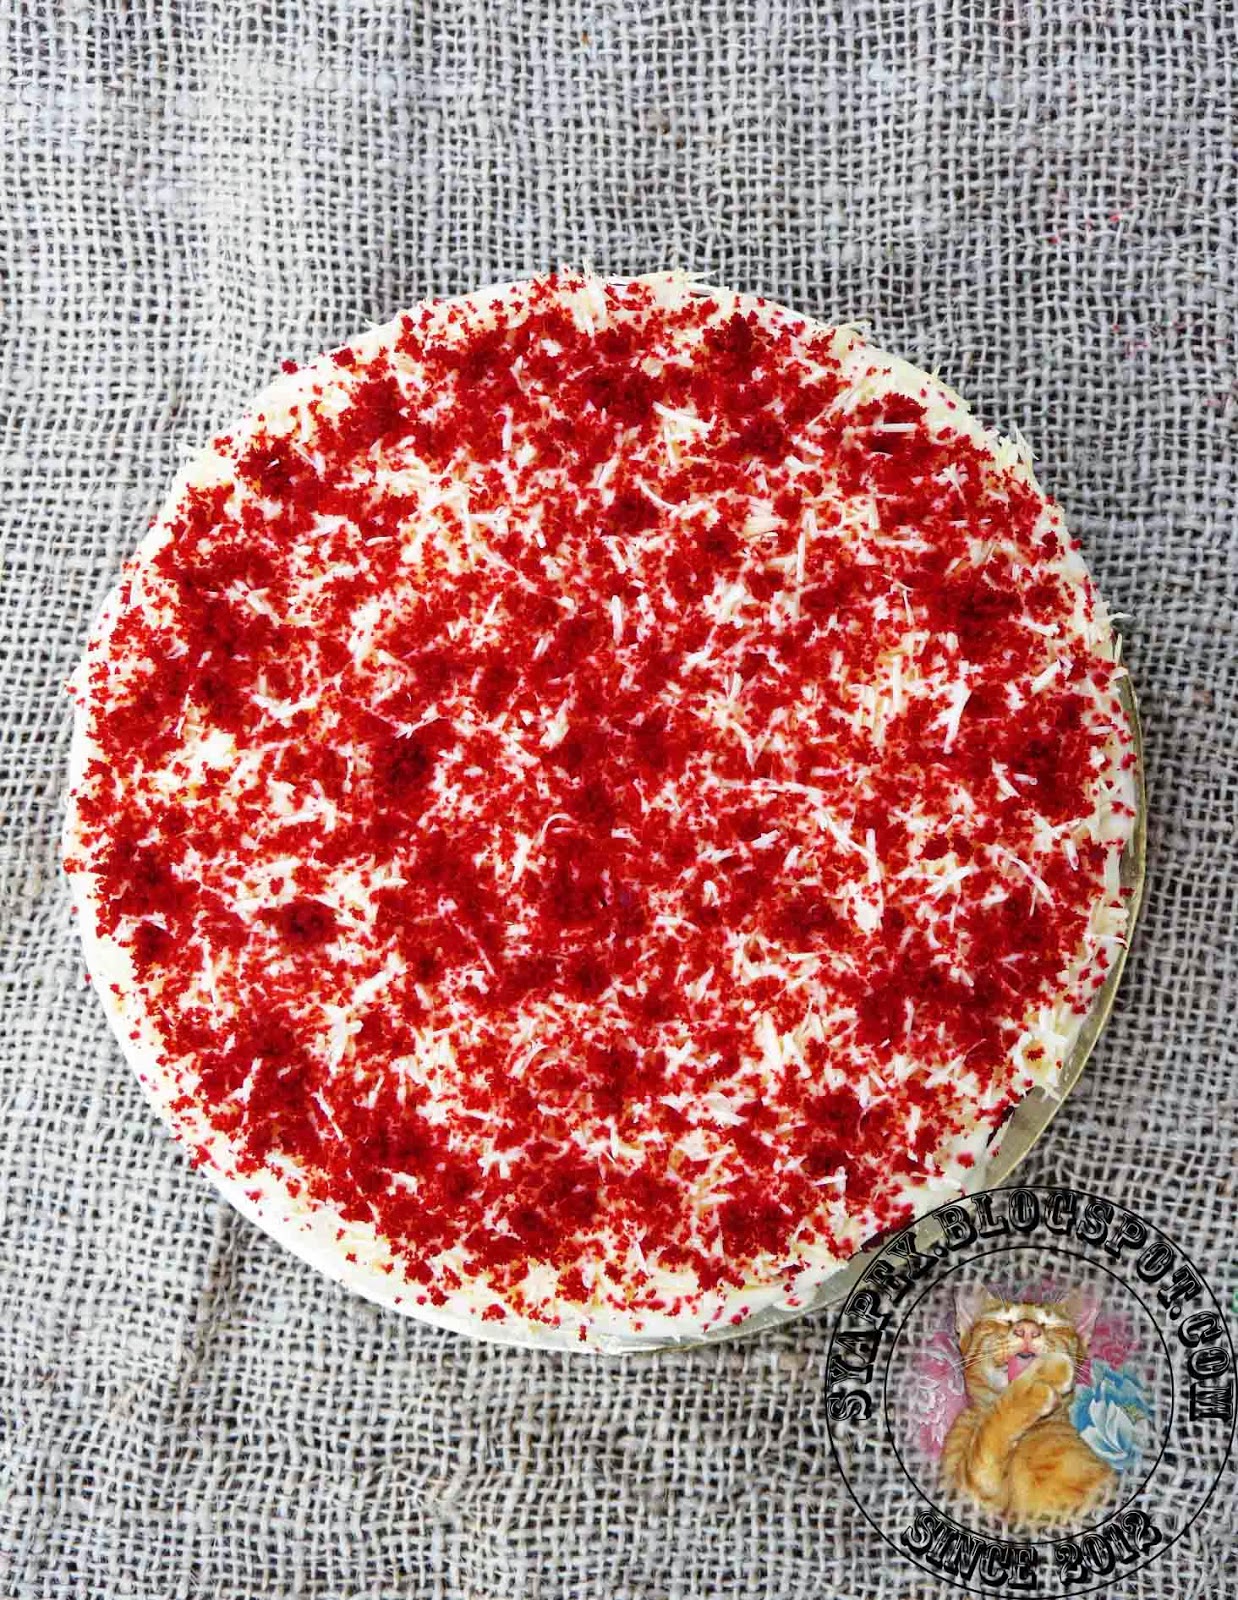 Syapex kitchen: Red Velvet Cheese Cake Meleleh